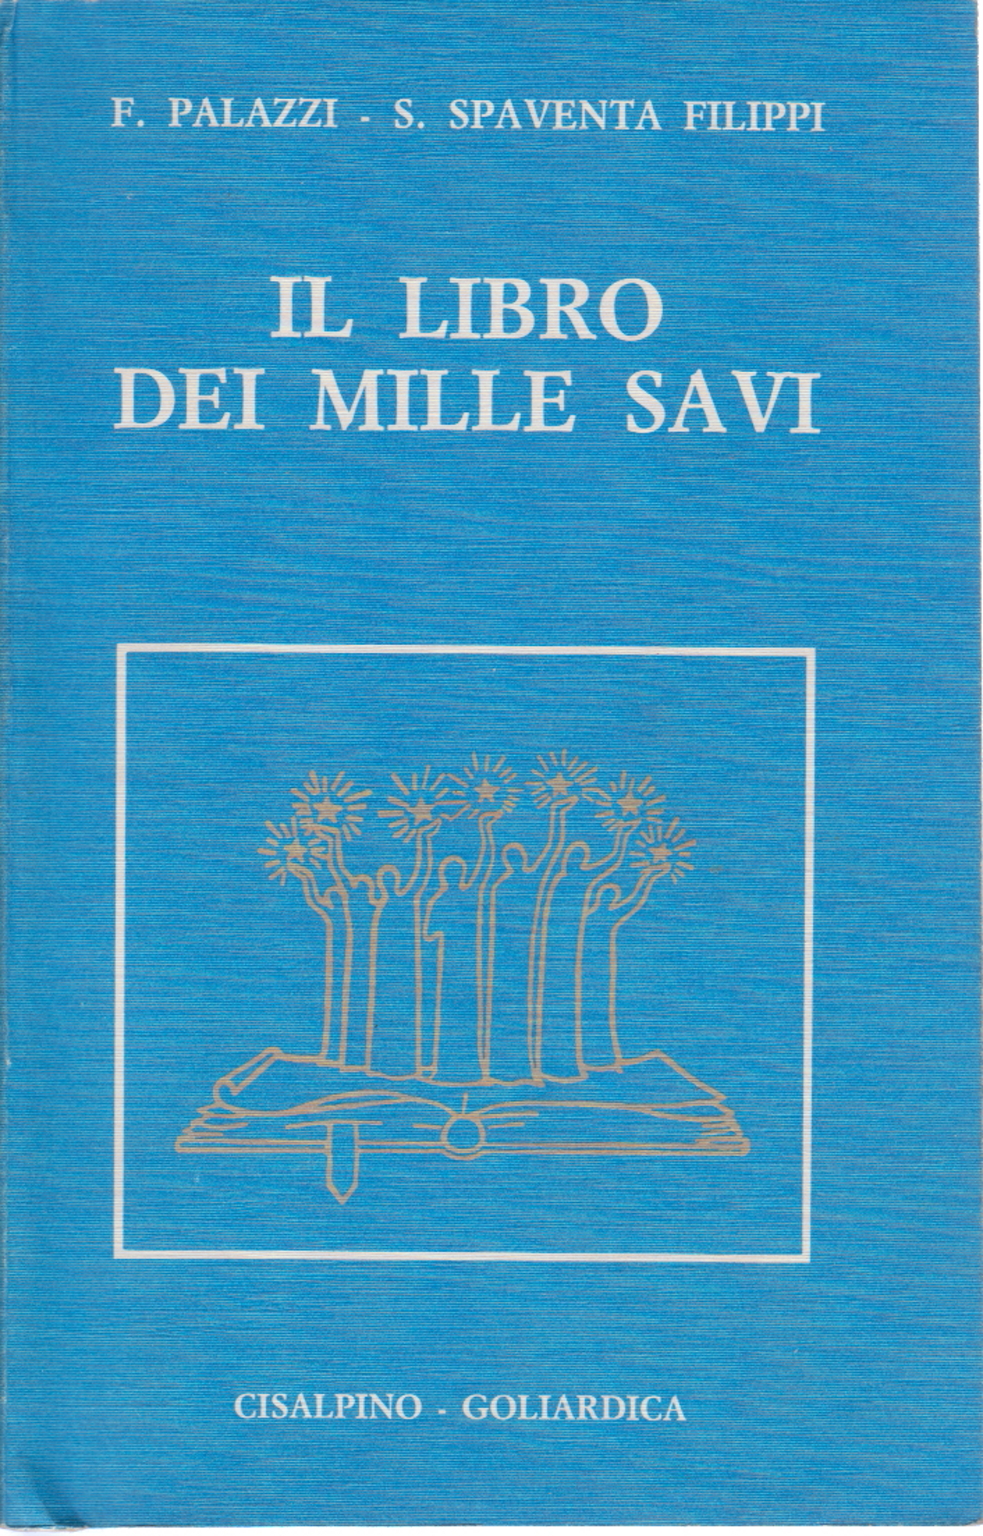 Le livre des mille sages, F. Palazzi S. Spaventa Filippi